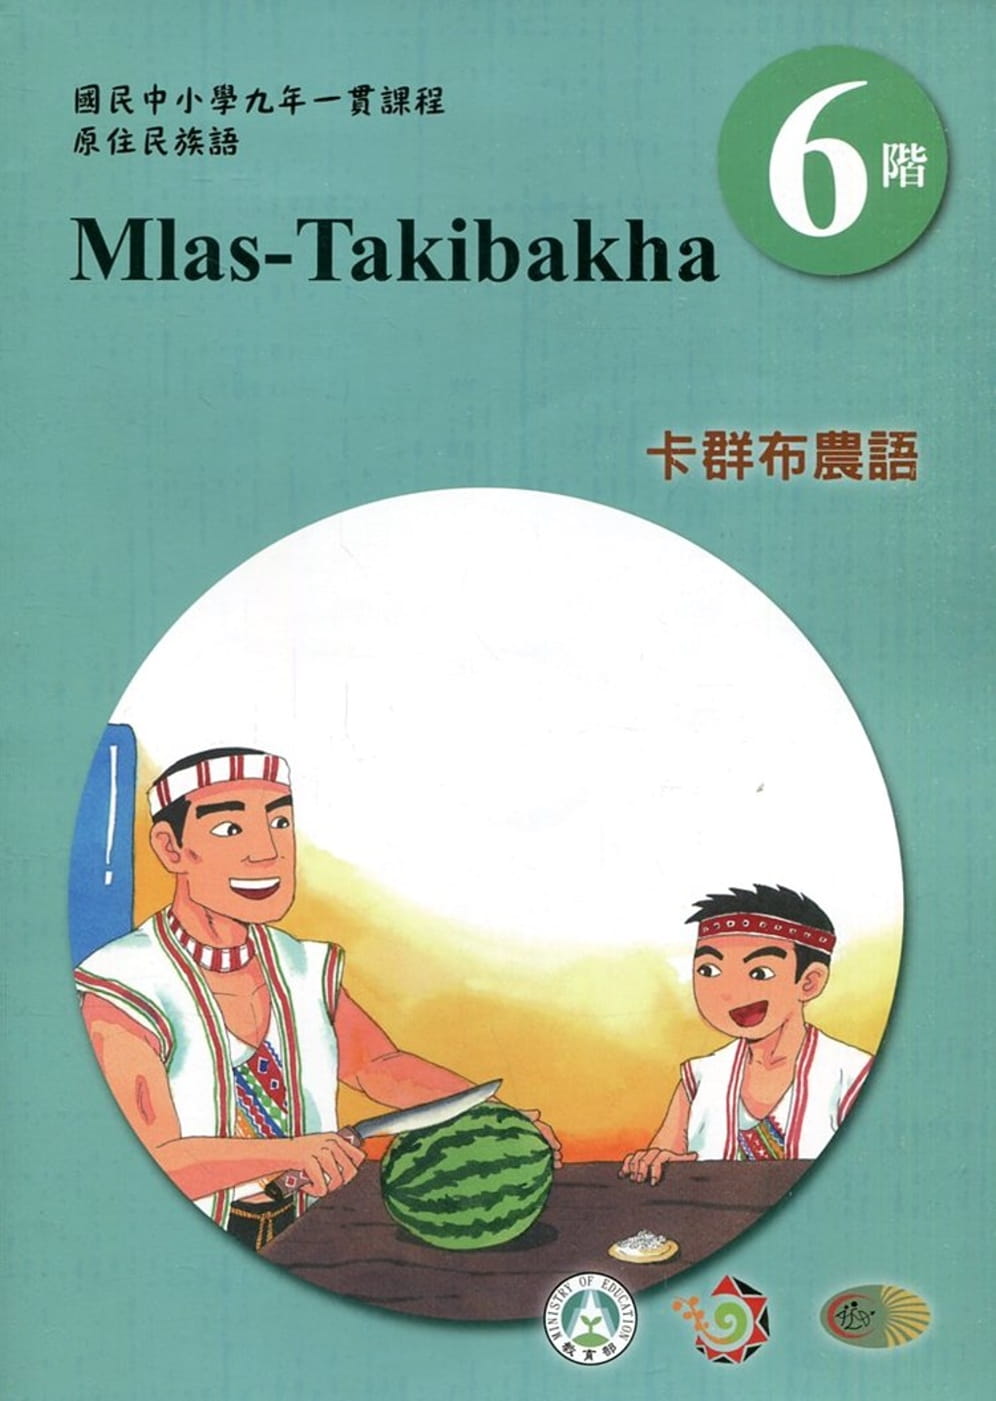 卡群布農語學習手冊第6階(附光碟)3版2刷